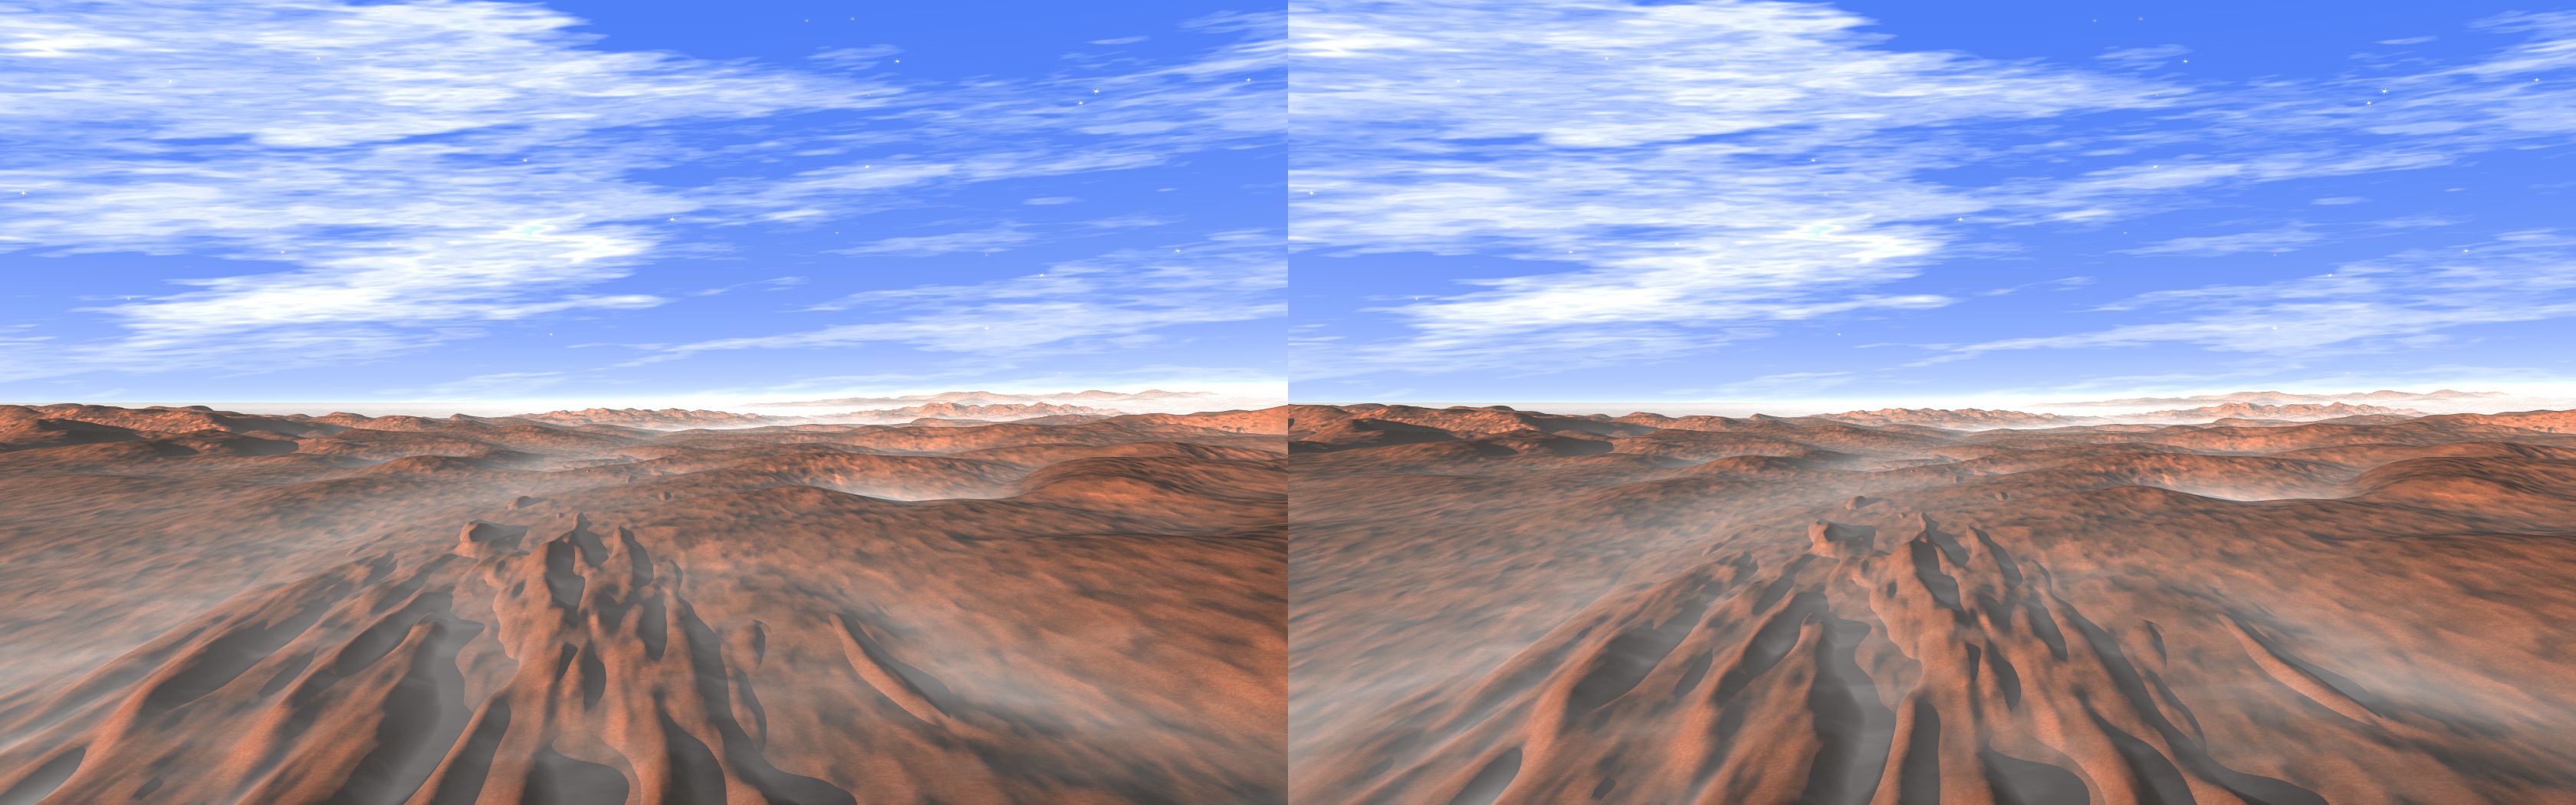 Red Mars Landscape - 3D stereo JPS image